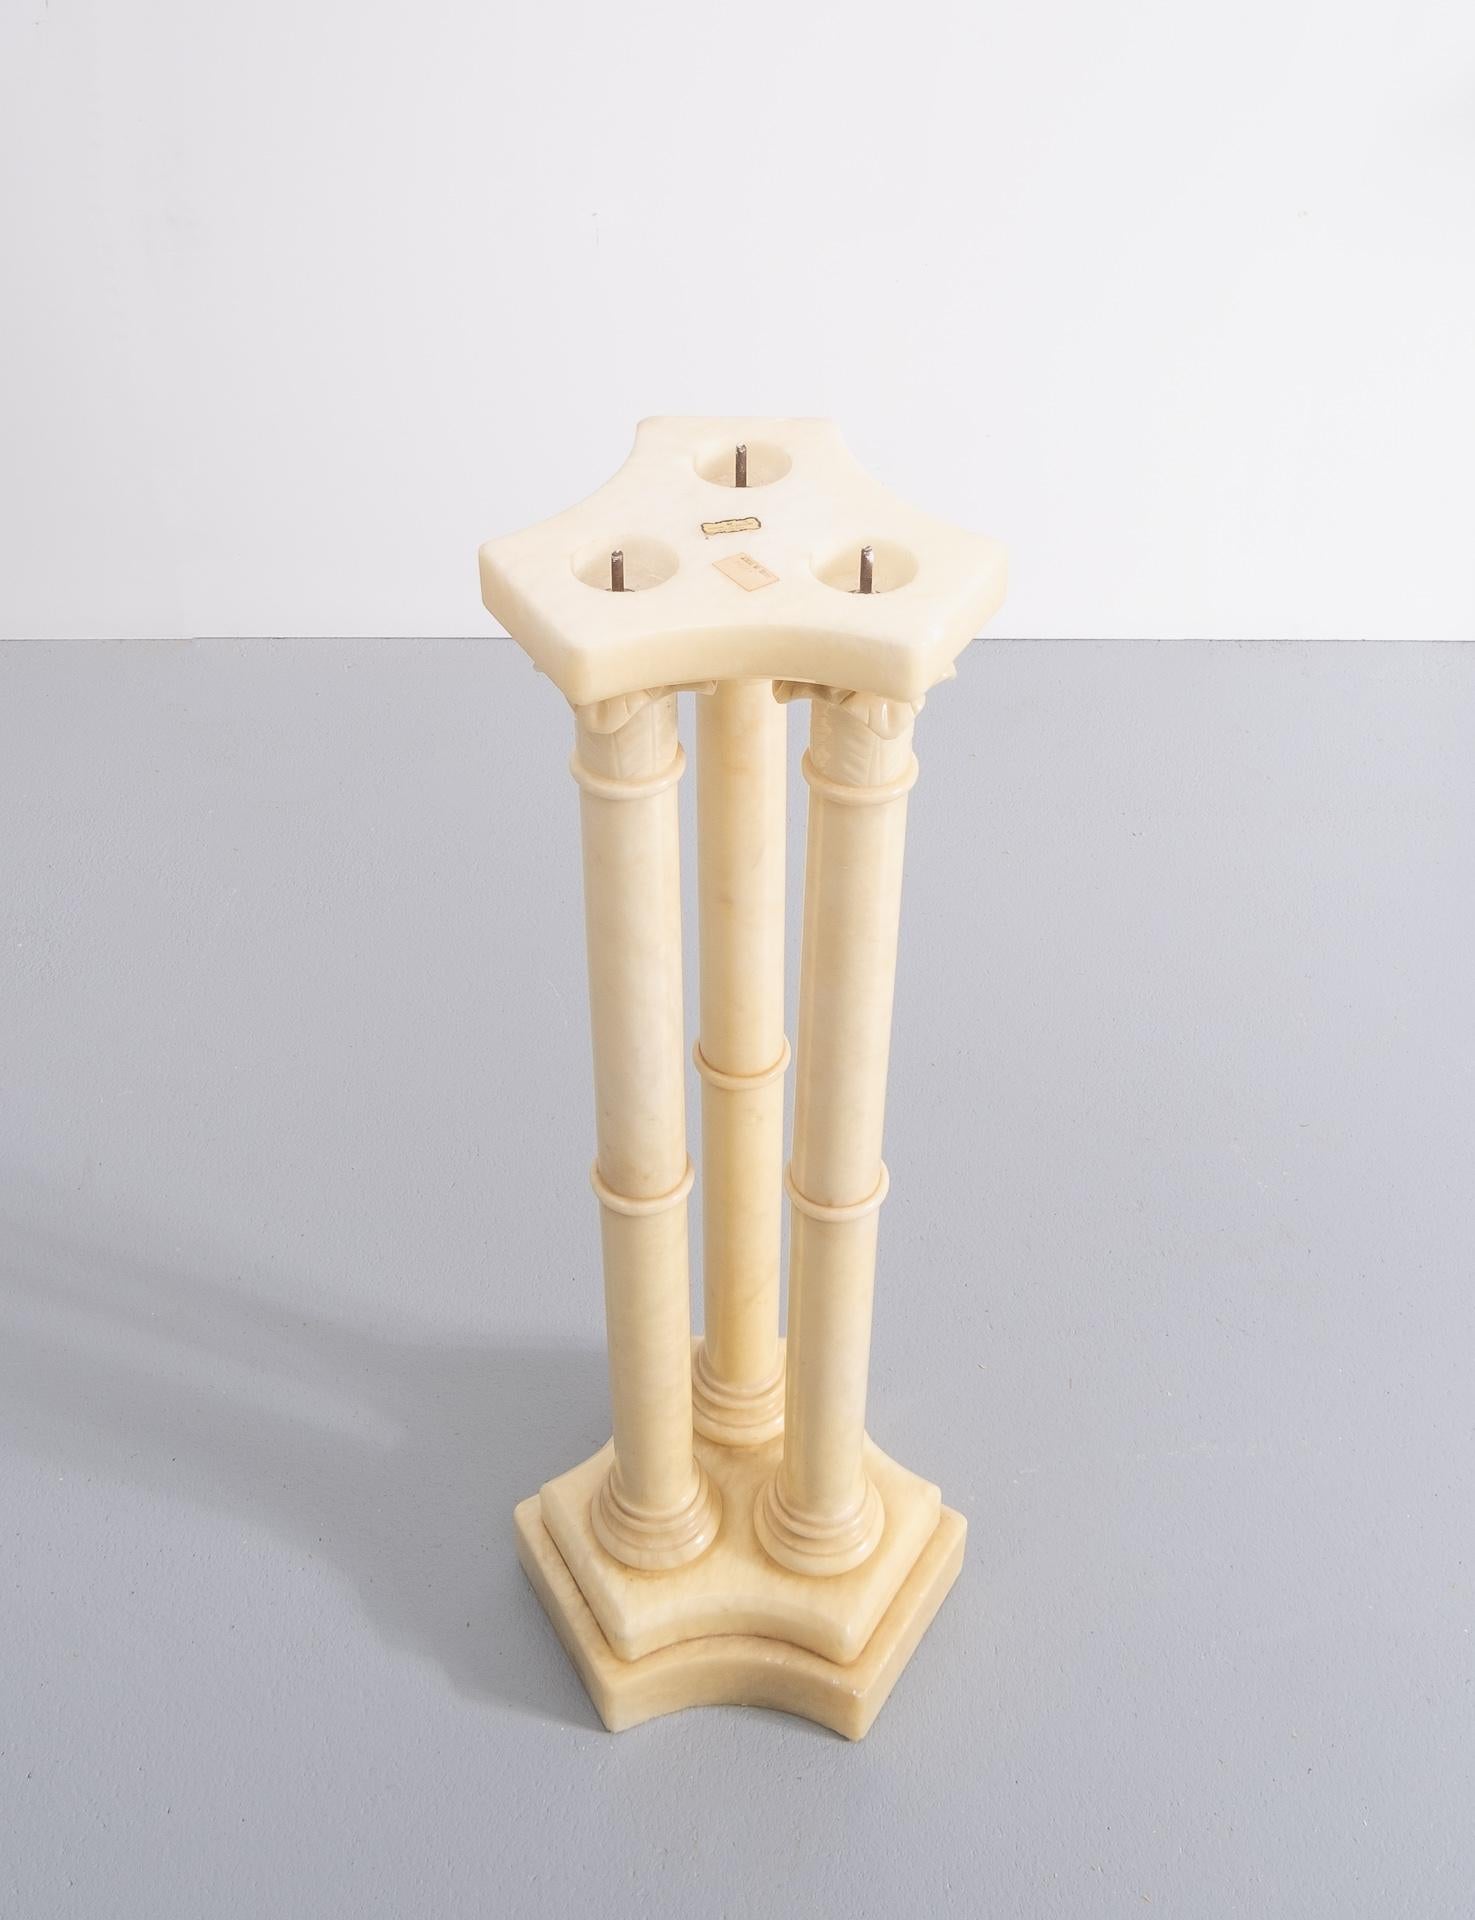 Sehr schöner neugriechischer Säulenständer. Italien 1960er Jahre Alabaster.Drei Säulen.
Signiert ABF Genuine Alabaster handgefertigt.